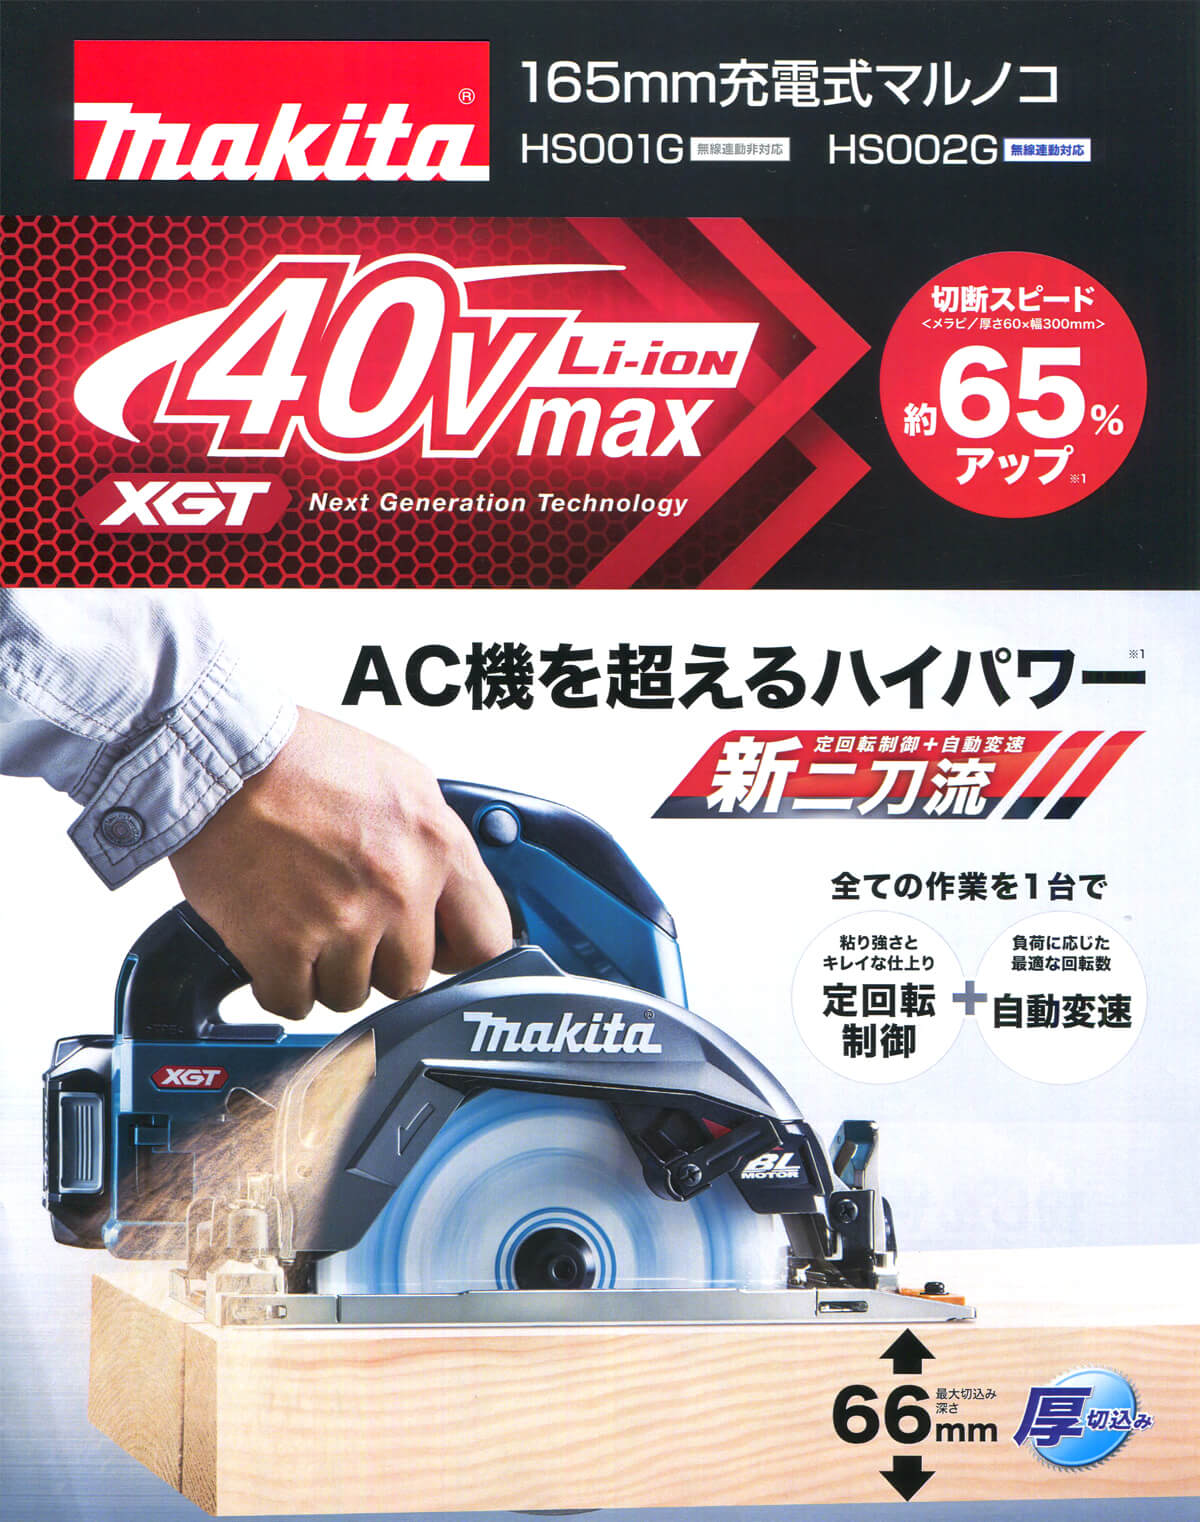 マキタ HS001GRDX 40Vmax充電式マルノコ 165mm ウエダ金物【公式サイト】